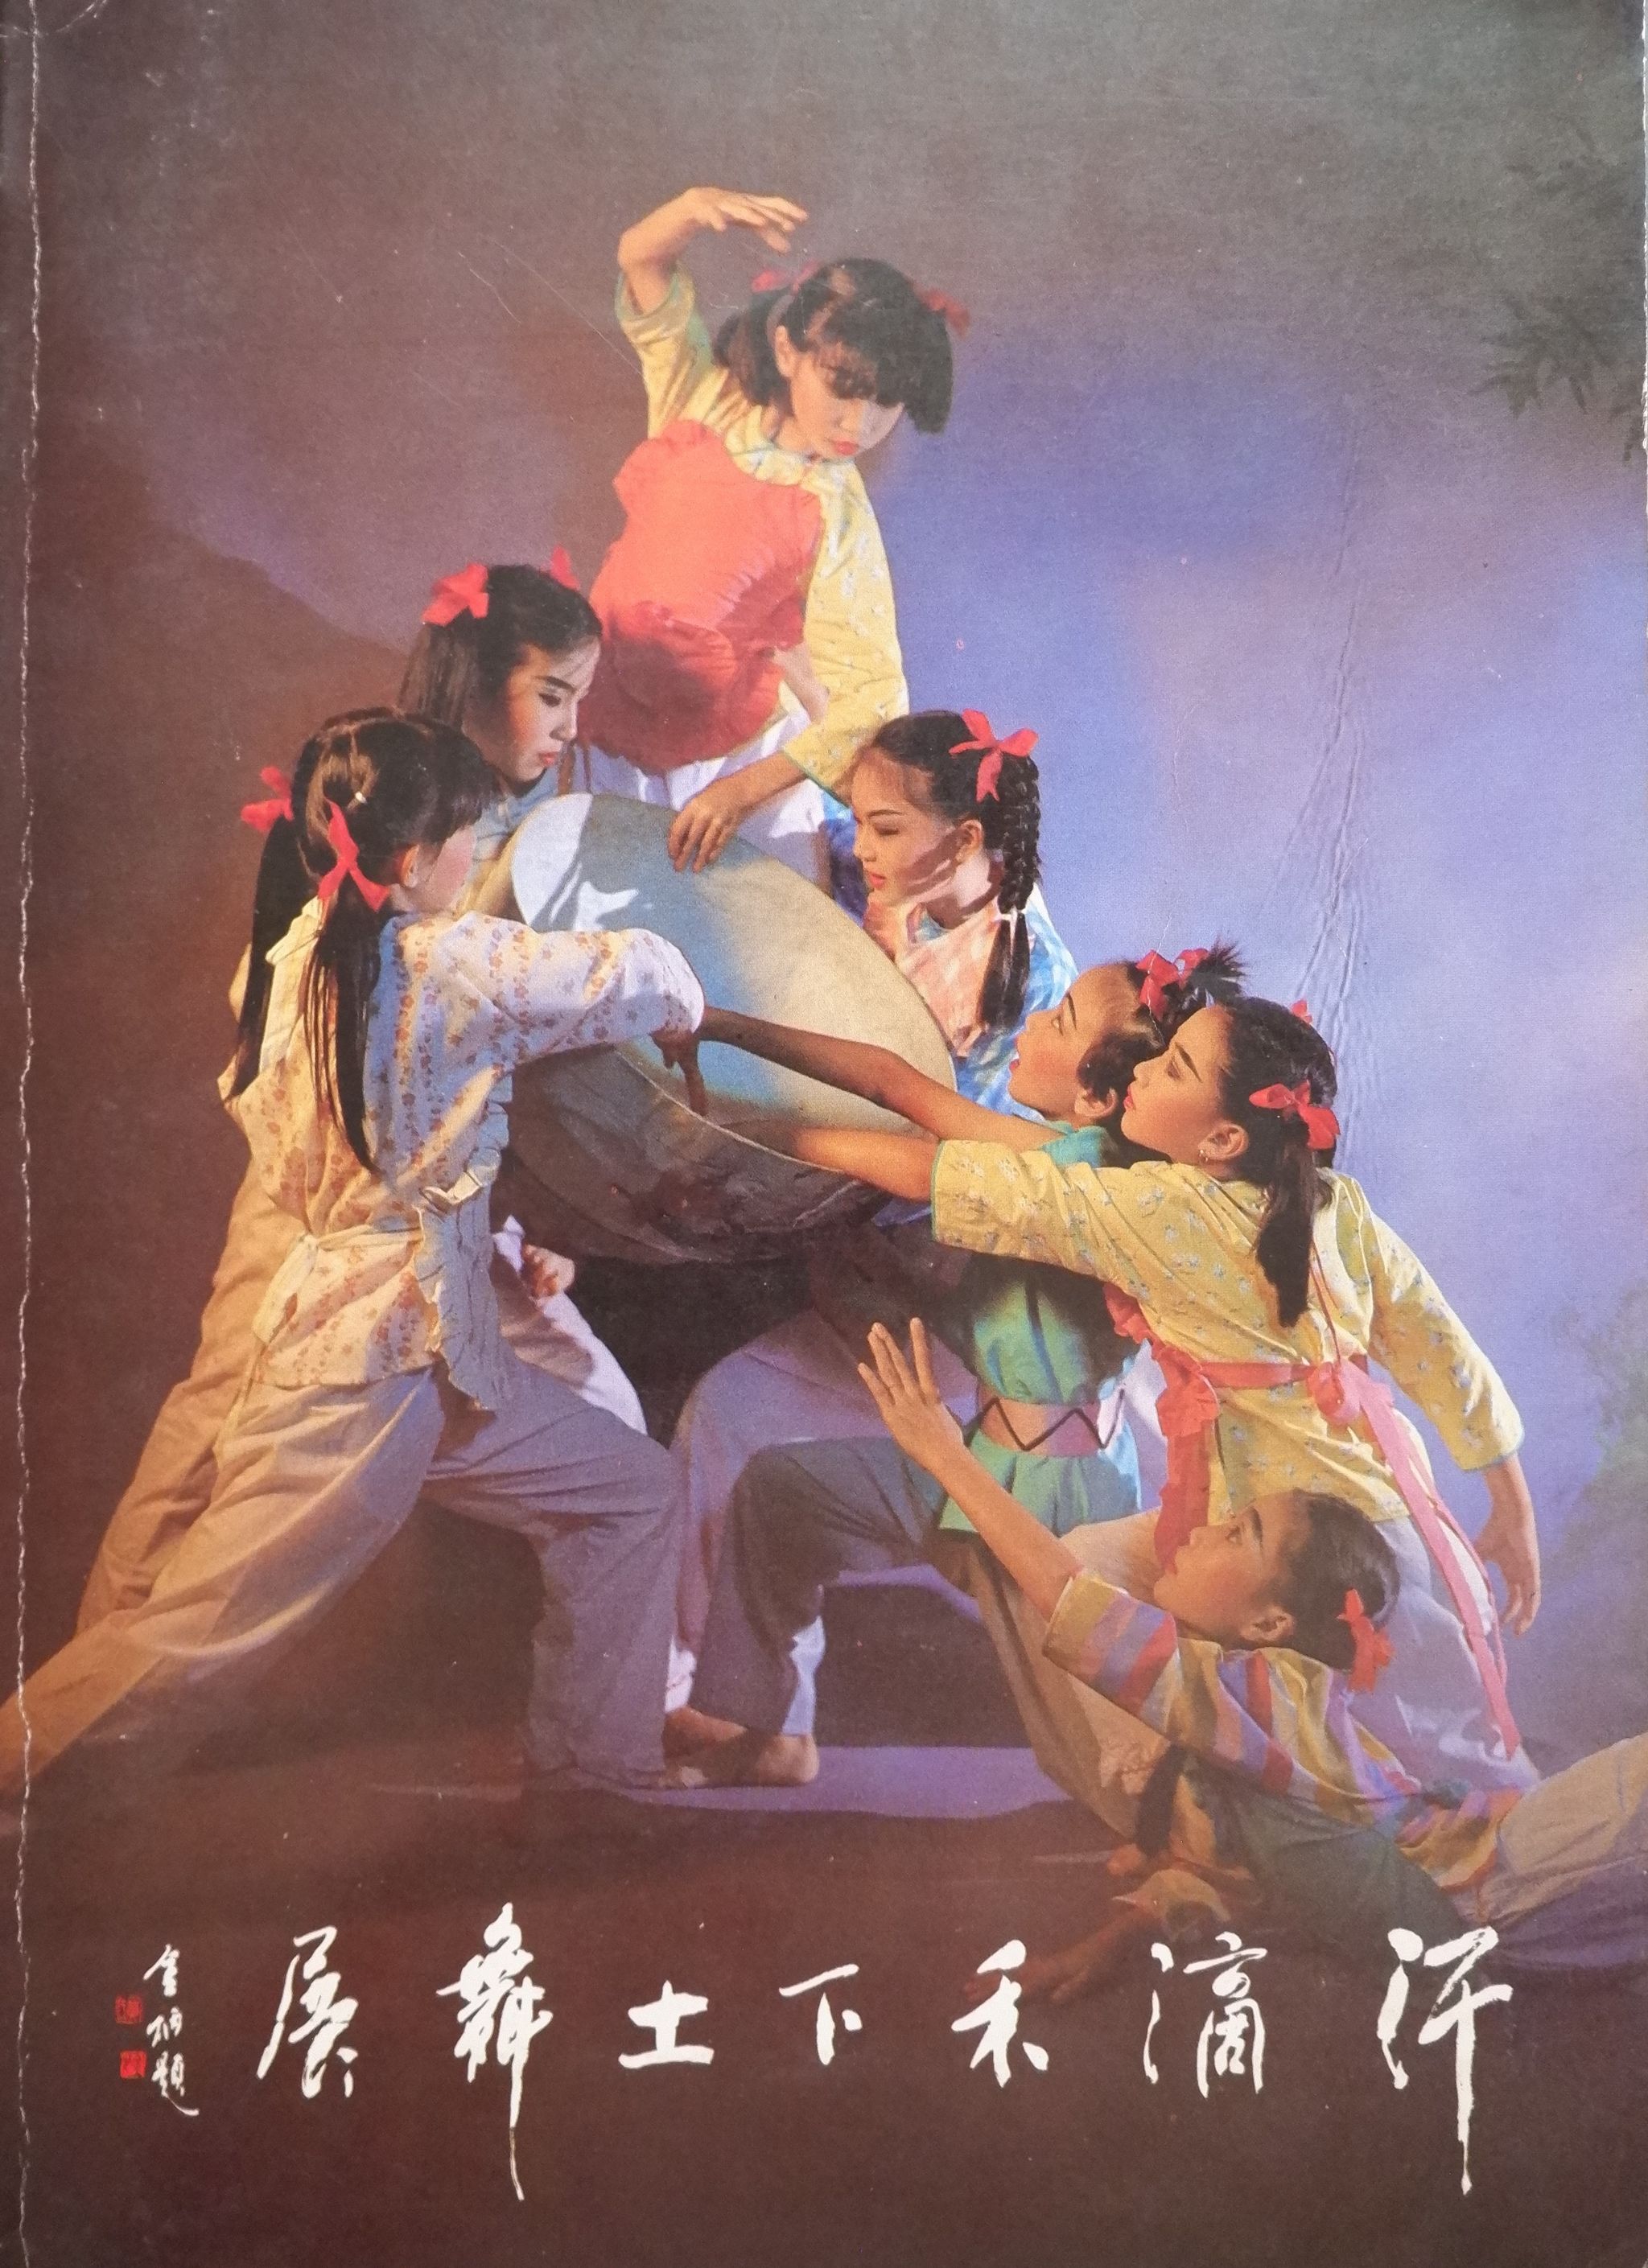 1985 Han Di He Xia Tu Dance Show Cover